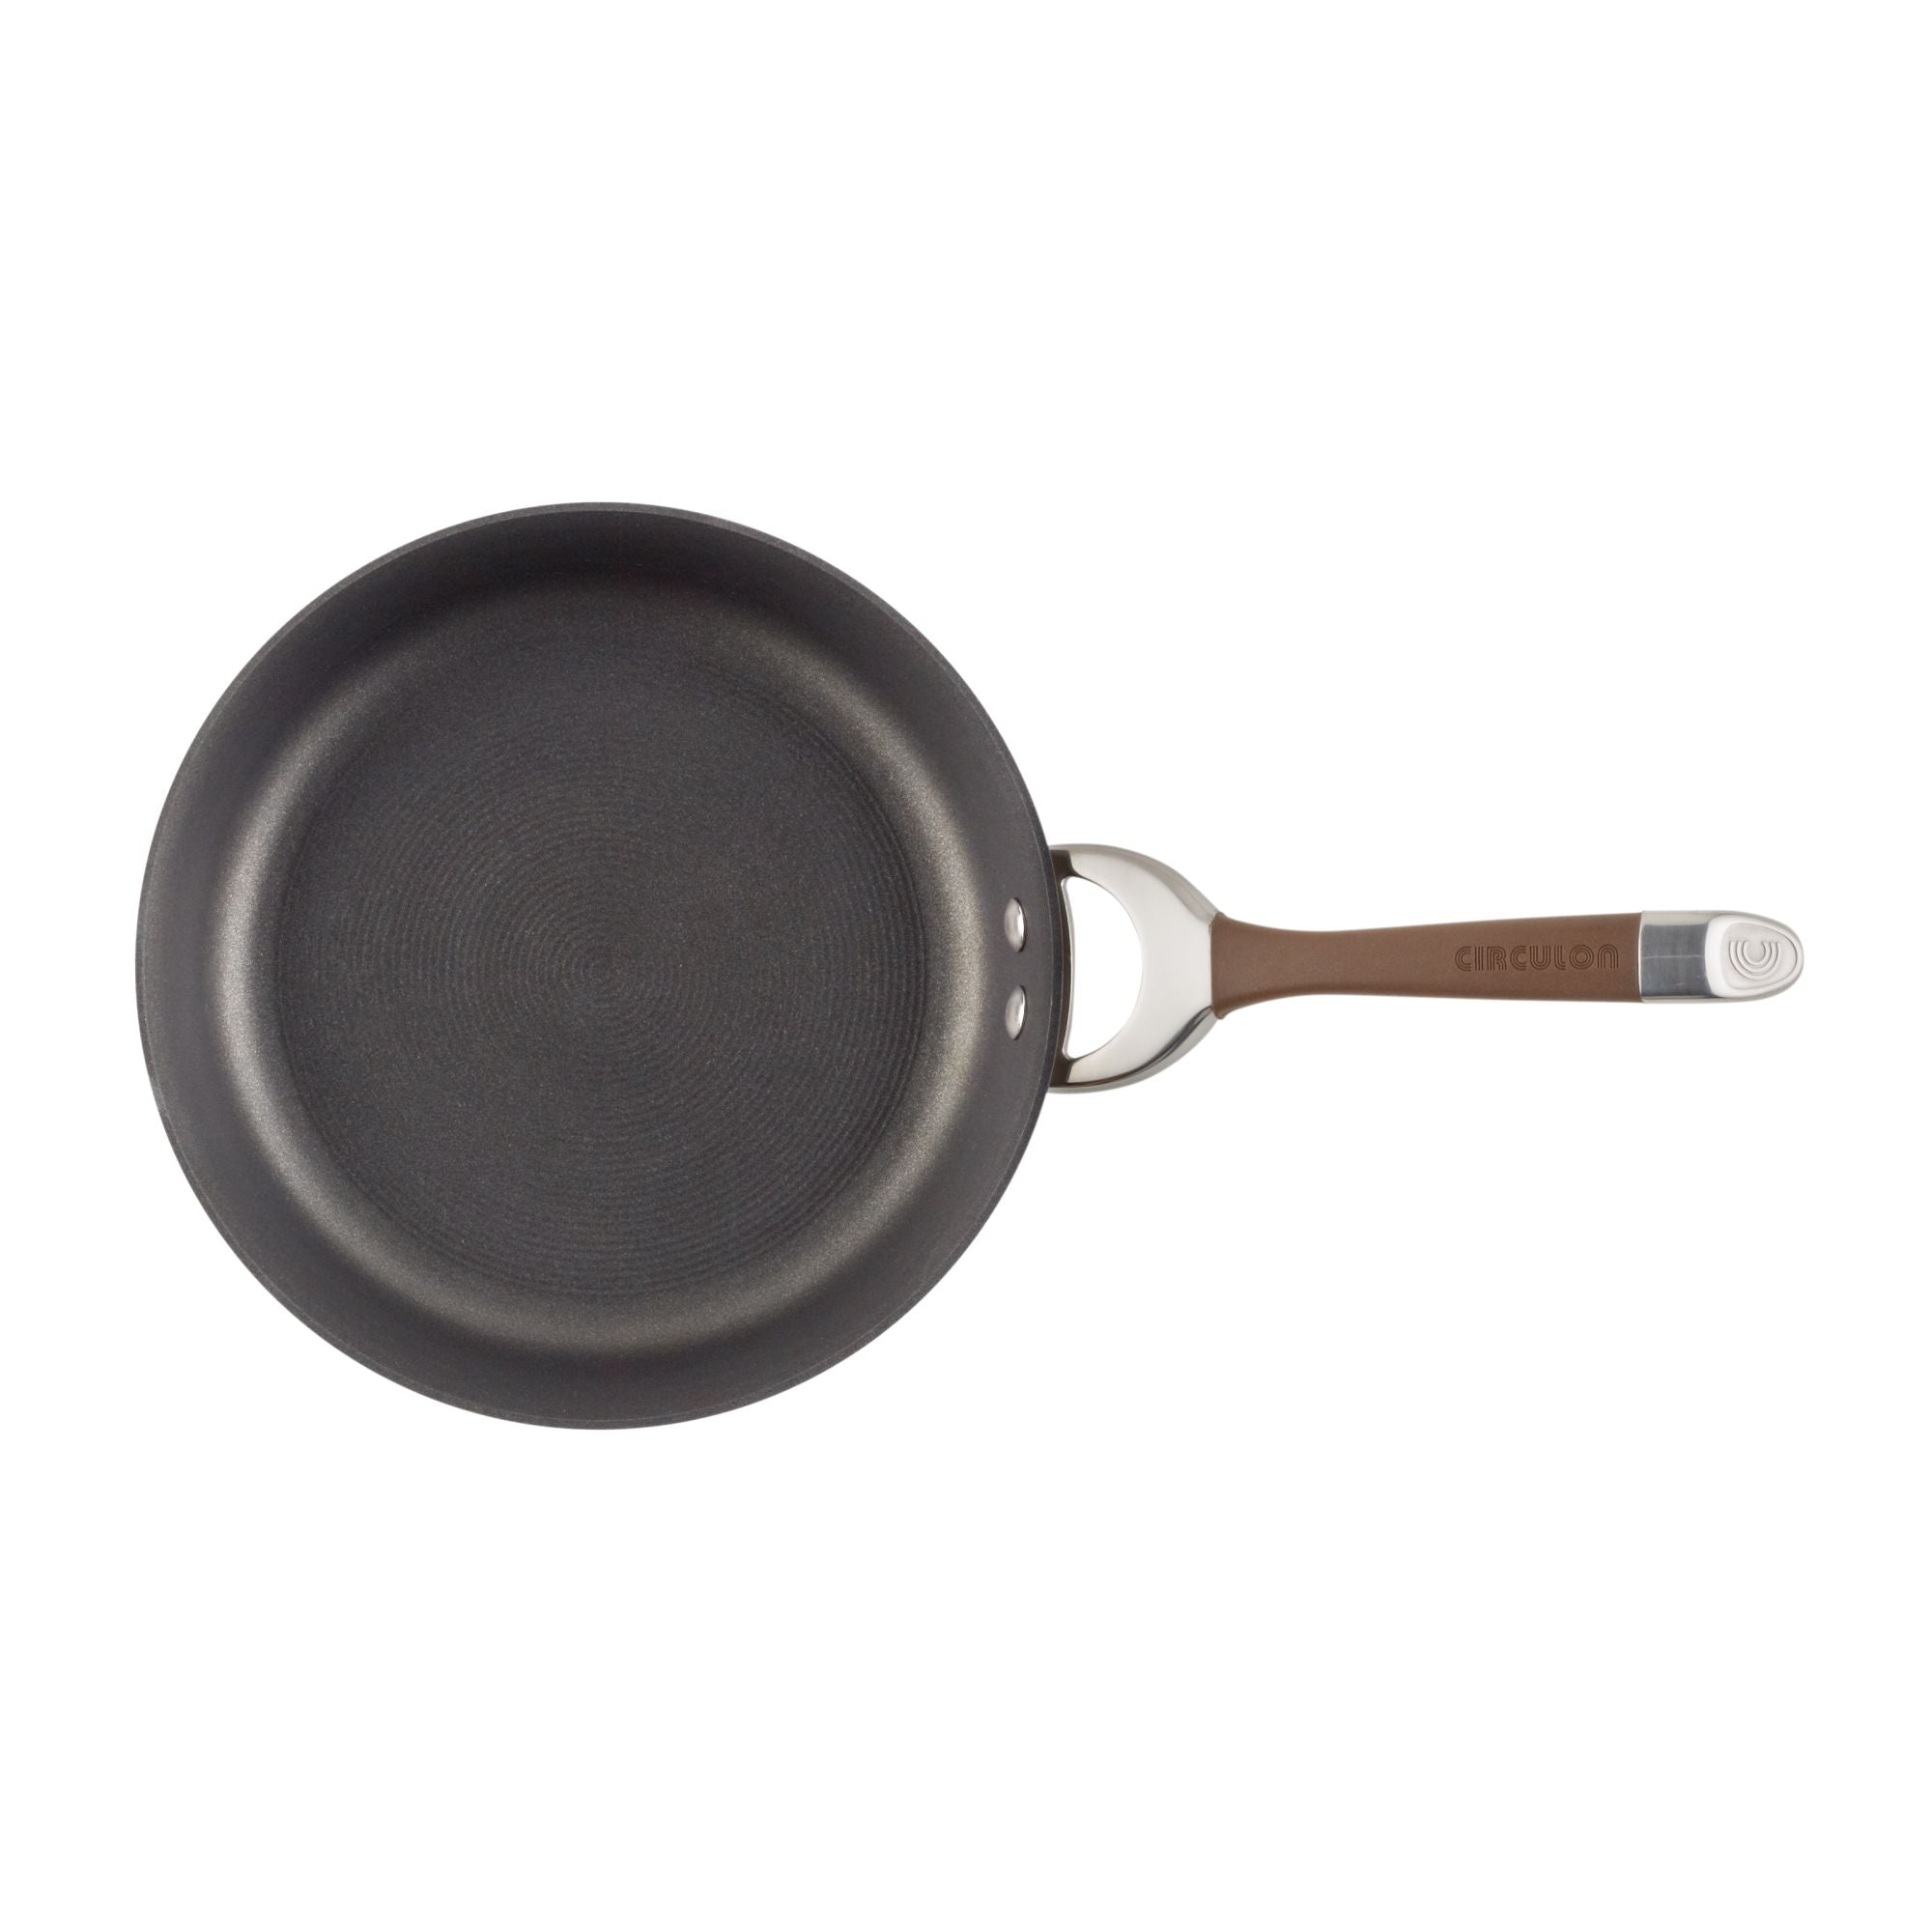 Symmetry 12-Inch Essential Stir Fry Pan